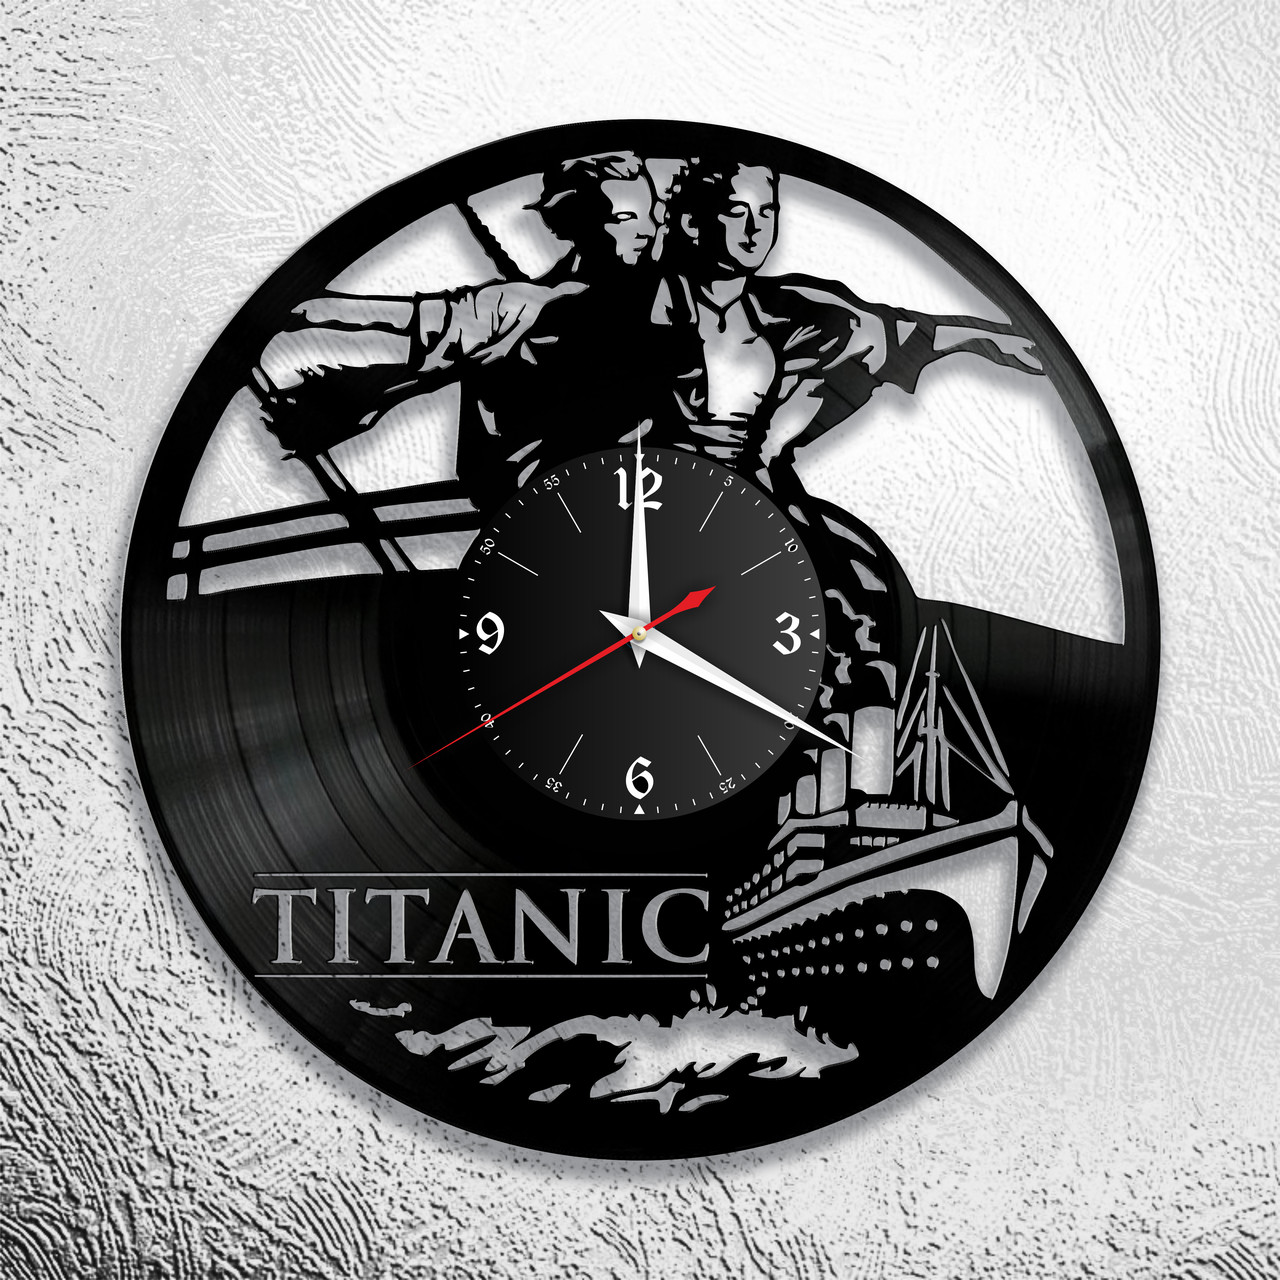 Оригинальные часы из виниловых пластинок  "Титаник"  версия 2, фото 1